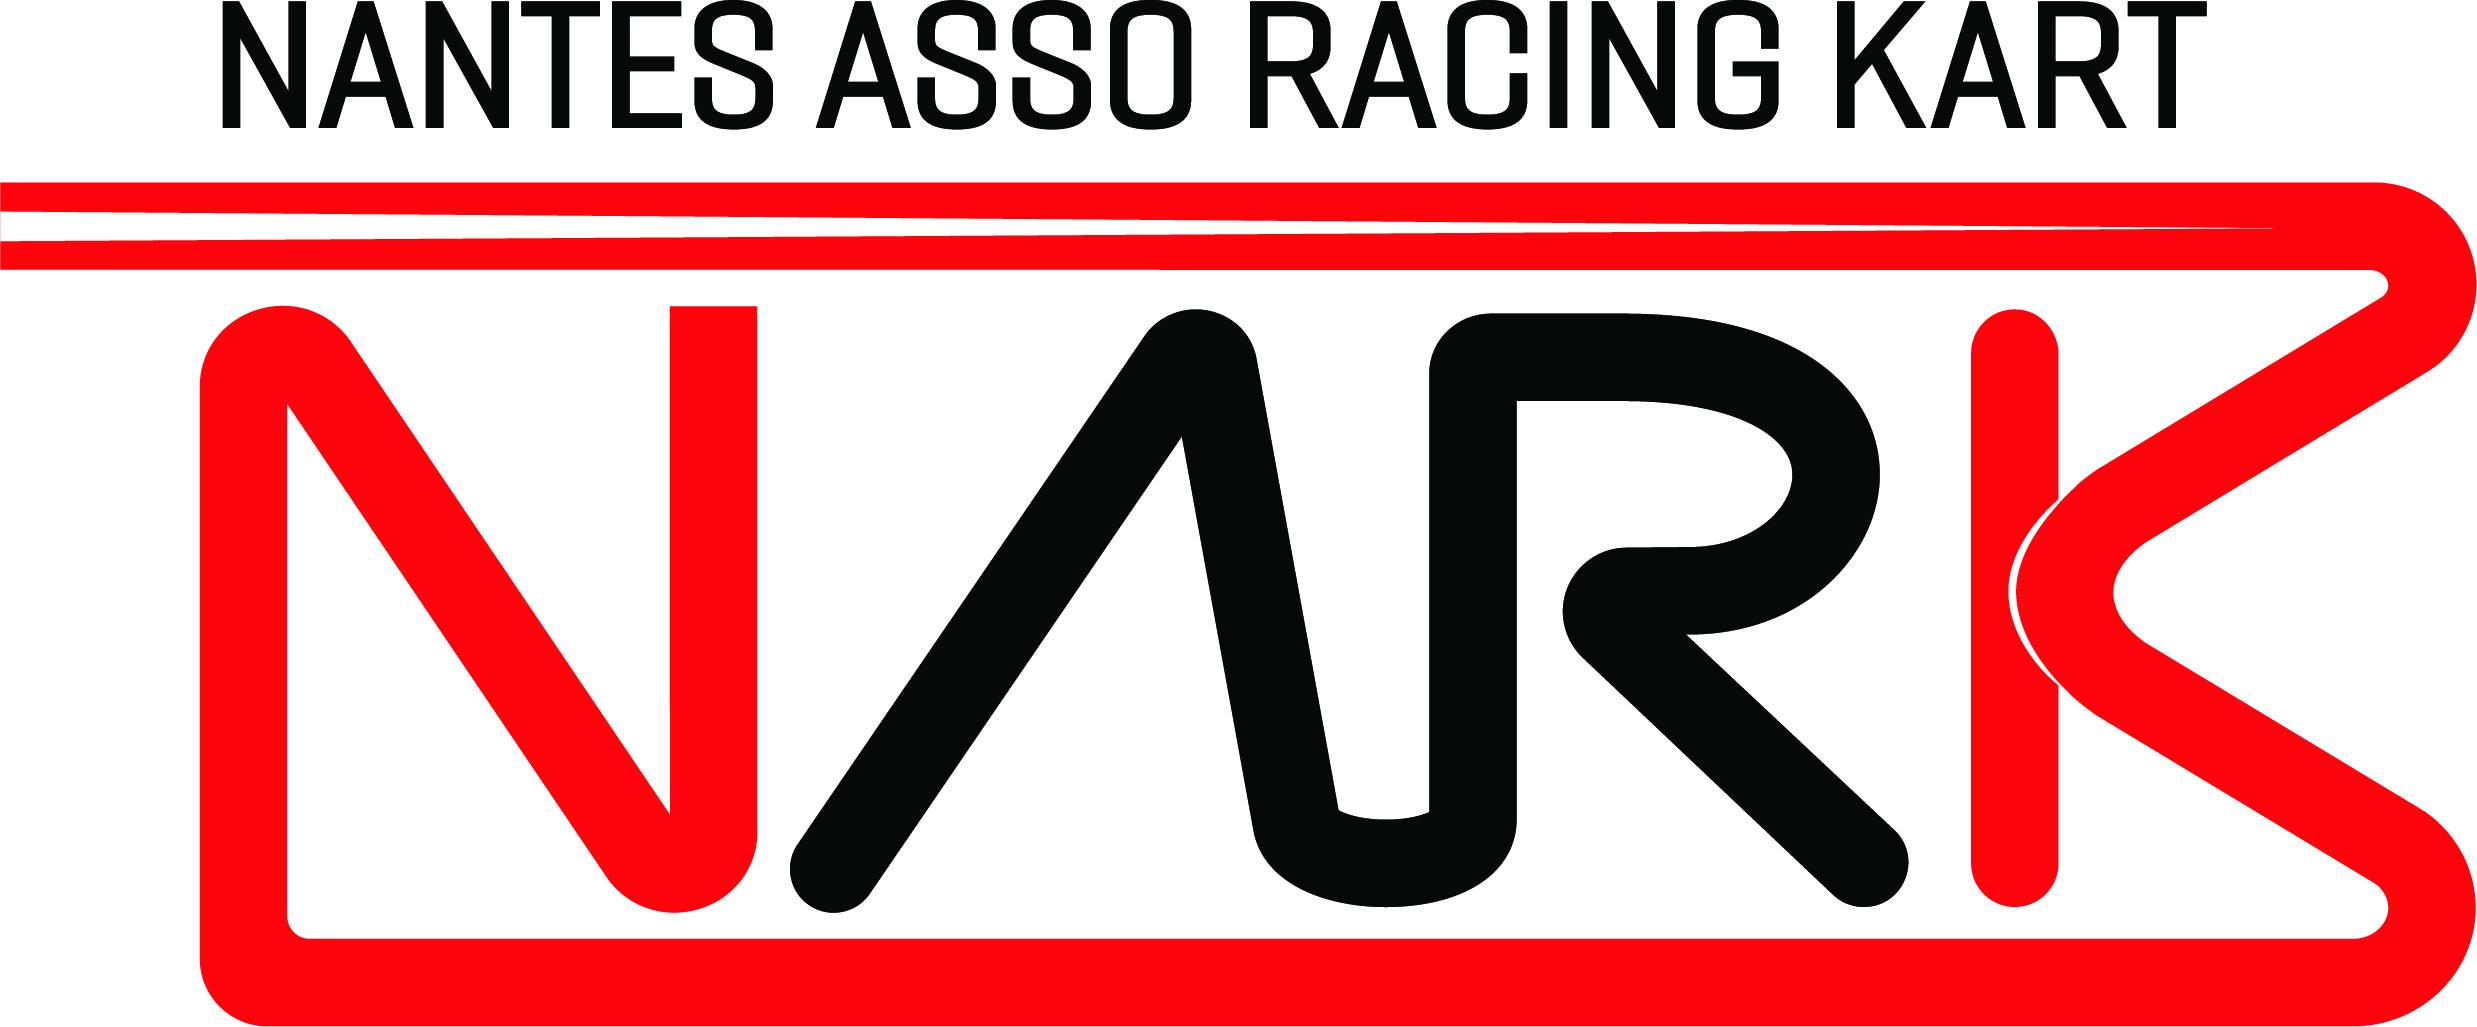 Nantes Asso Racing Kart (NARK)